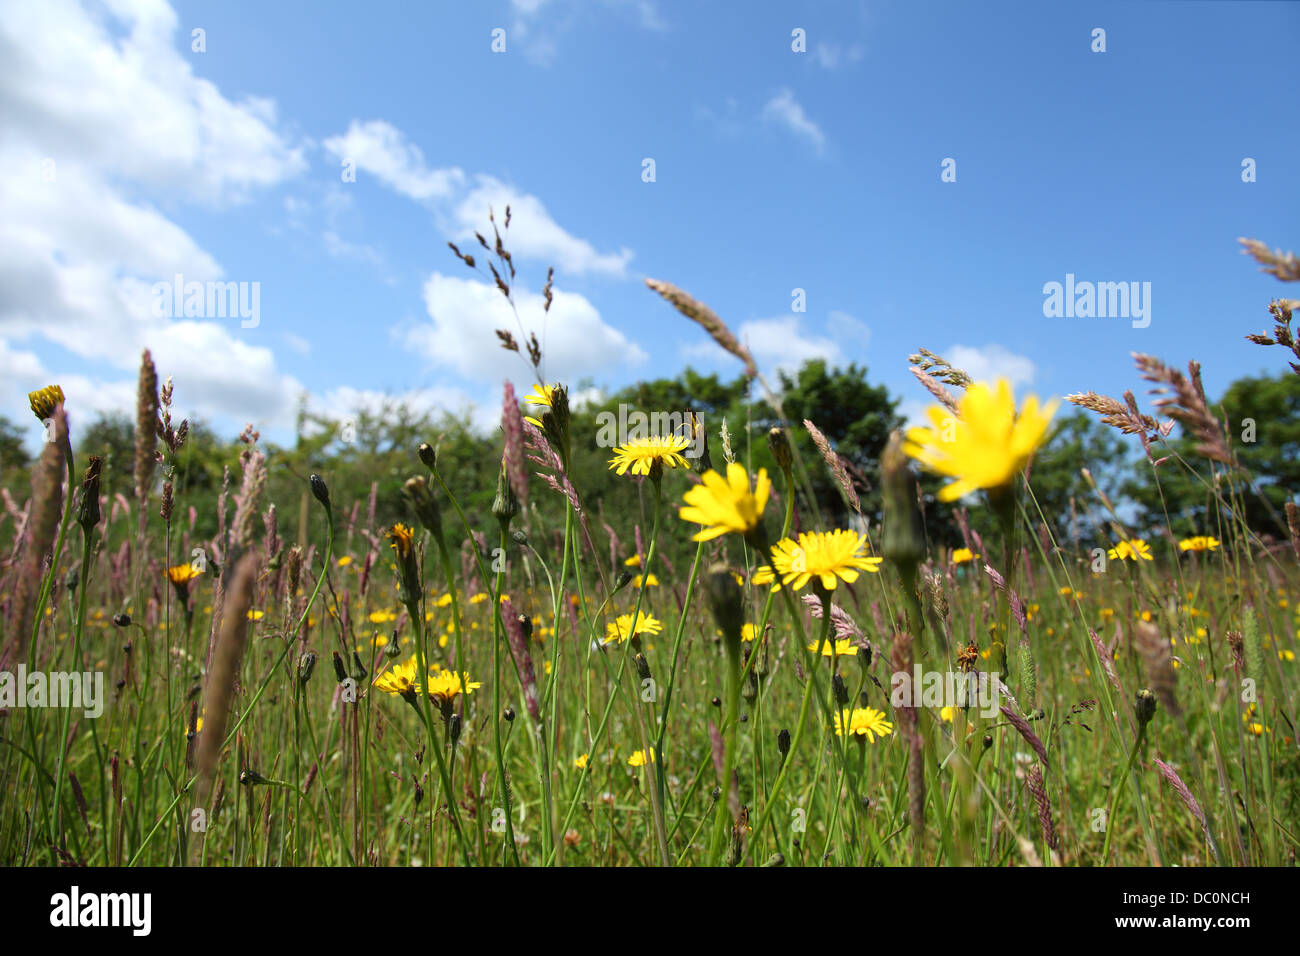 Saftig grüne Wiese Rasen mit gelben Löwenzahn (Taraxacum Officinale) gegen einen klaren blauen Himmel mit weißen Wolken. Stockfoto